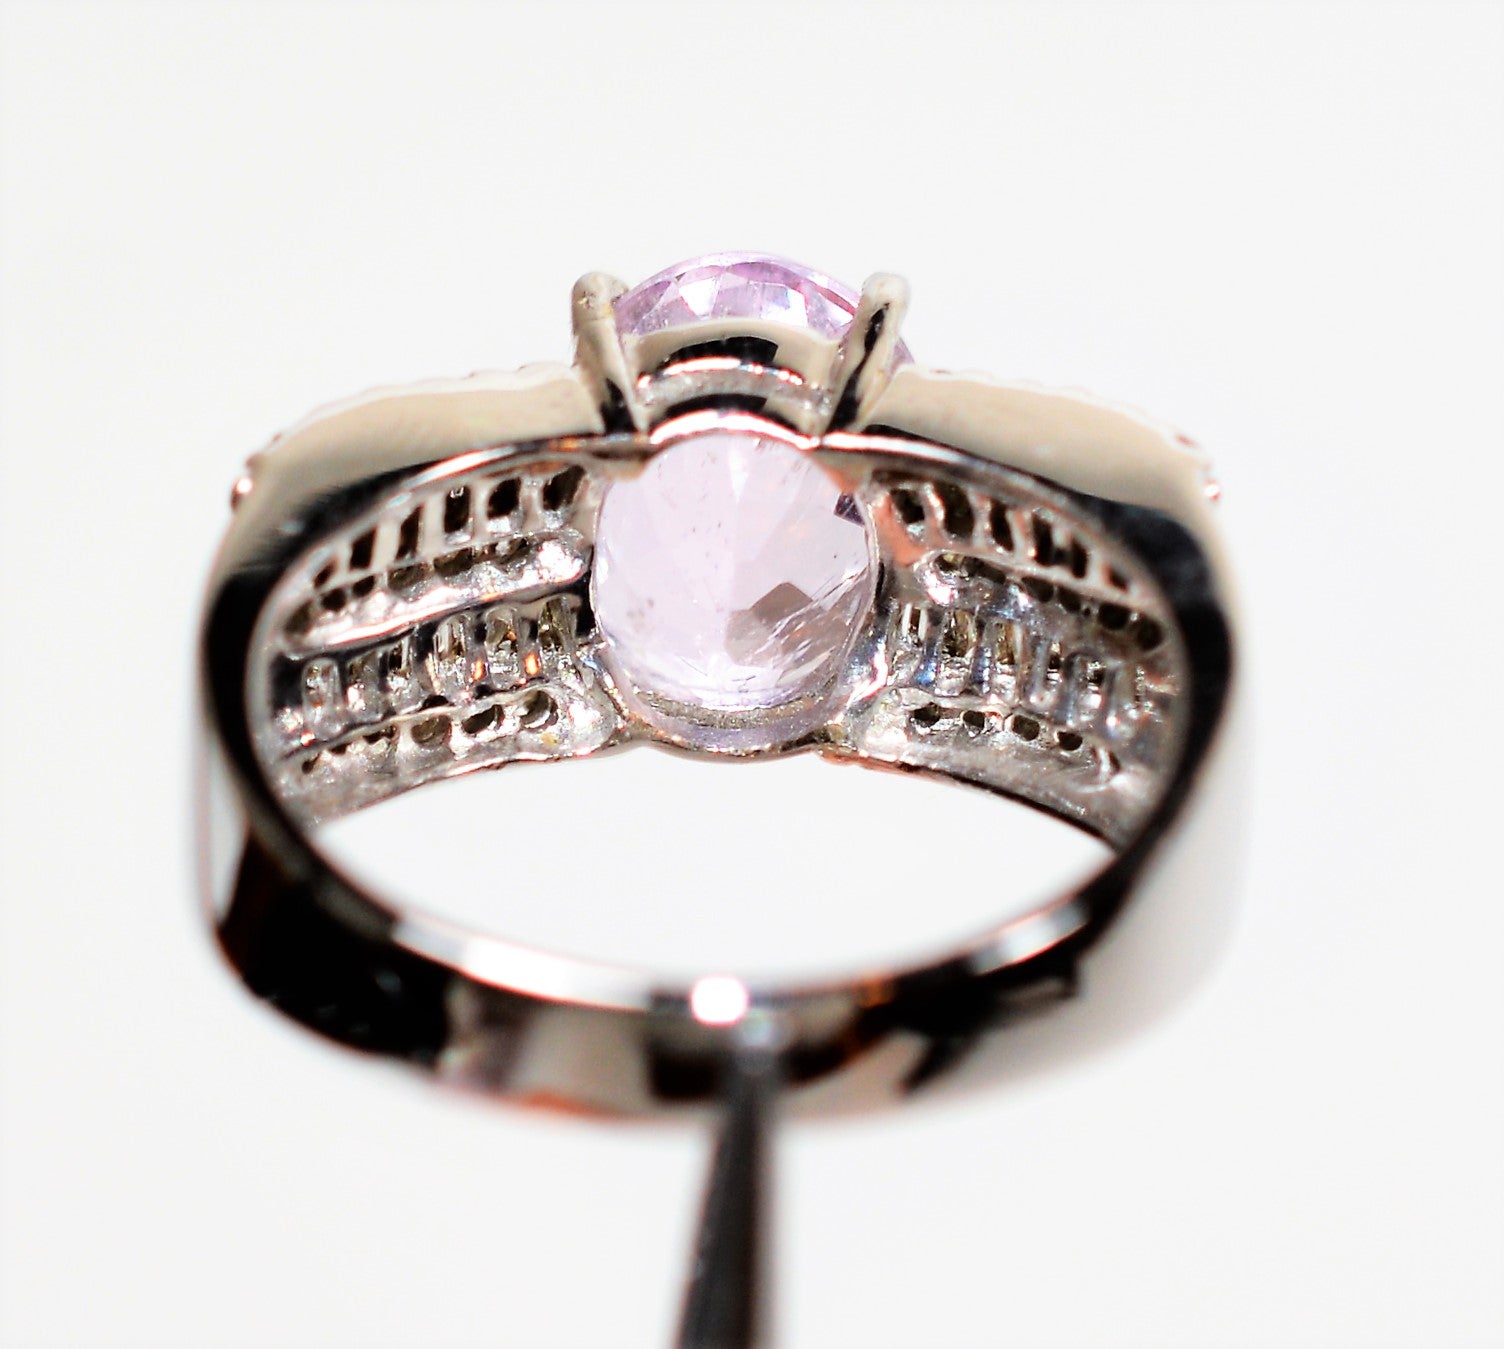 Natural Kunzite & Diamond Ring 18K Solid White Gold 5.74tcw Kunzite Ring Pink Ring Cocktail Ring Statement Ring Vintage Ring Estate Jewelry